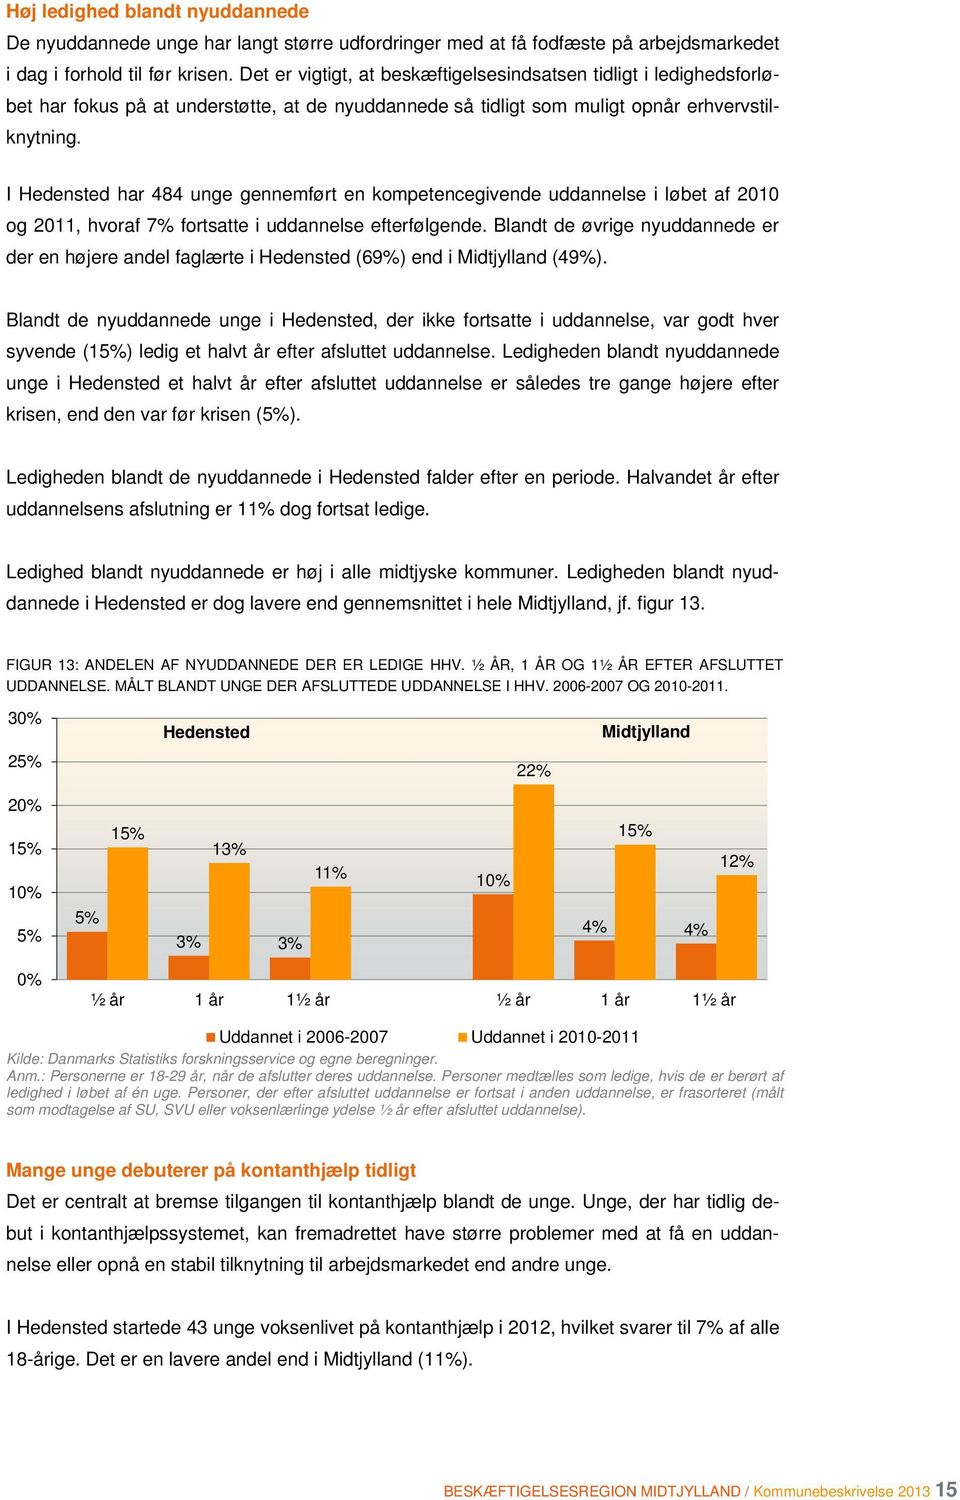 I Hedensted har 484 unge gennemført en kompetencegivende uddannelse i løbet af 2010 og 2011, hvoraf 7% fortsatte i uddannelse efterfølgende.